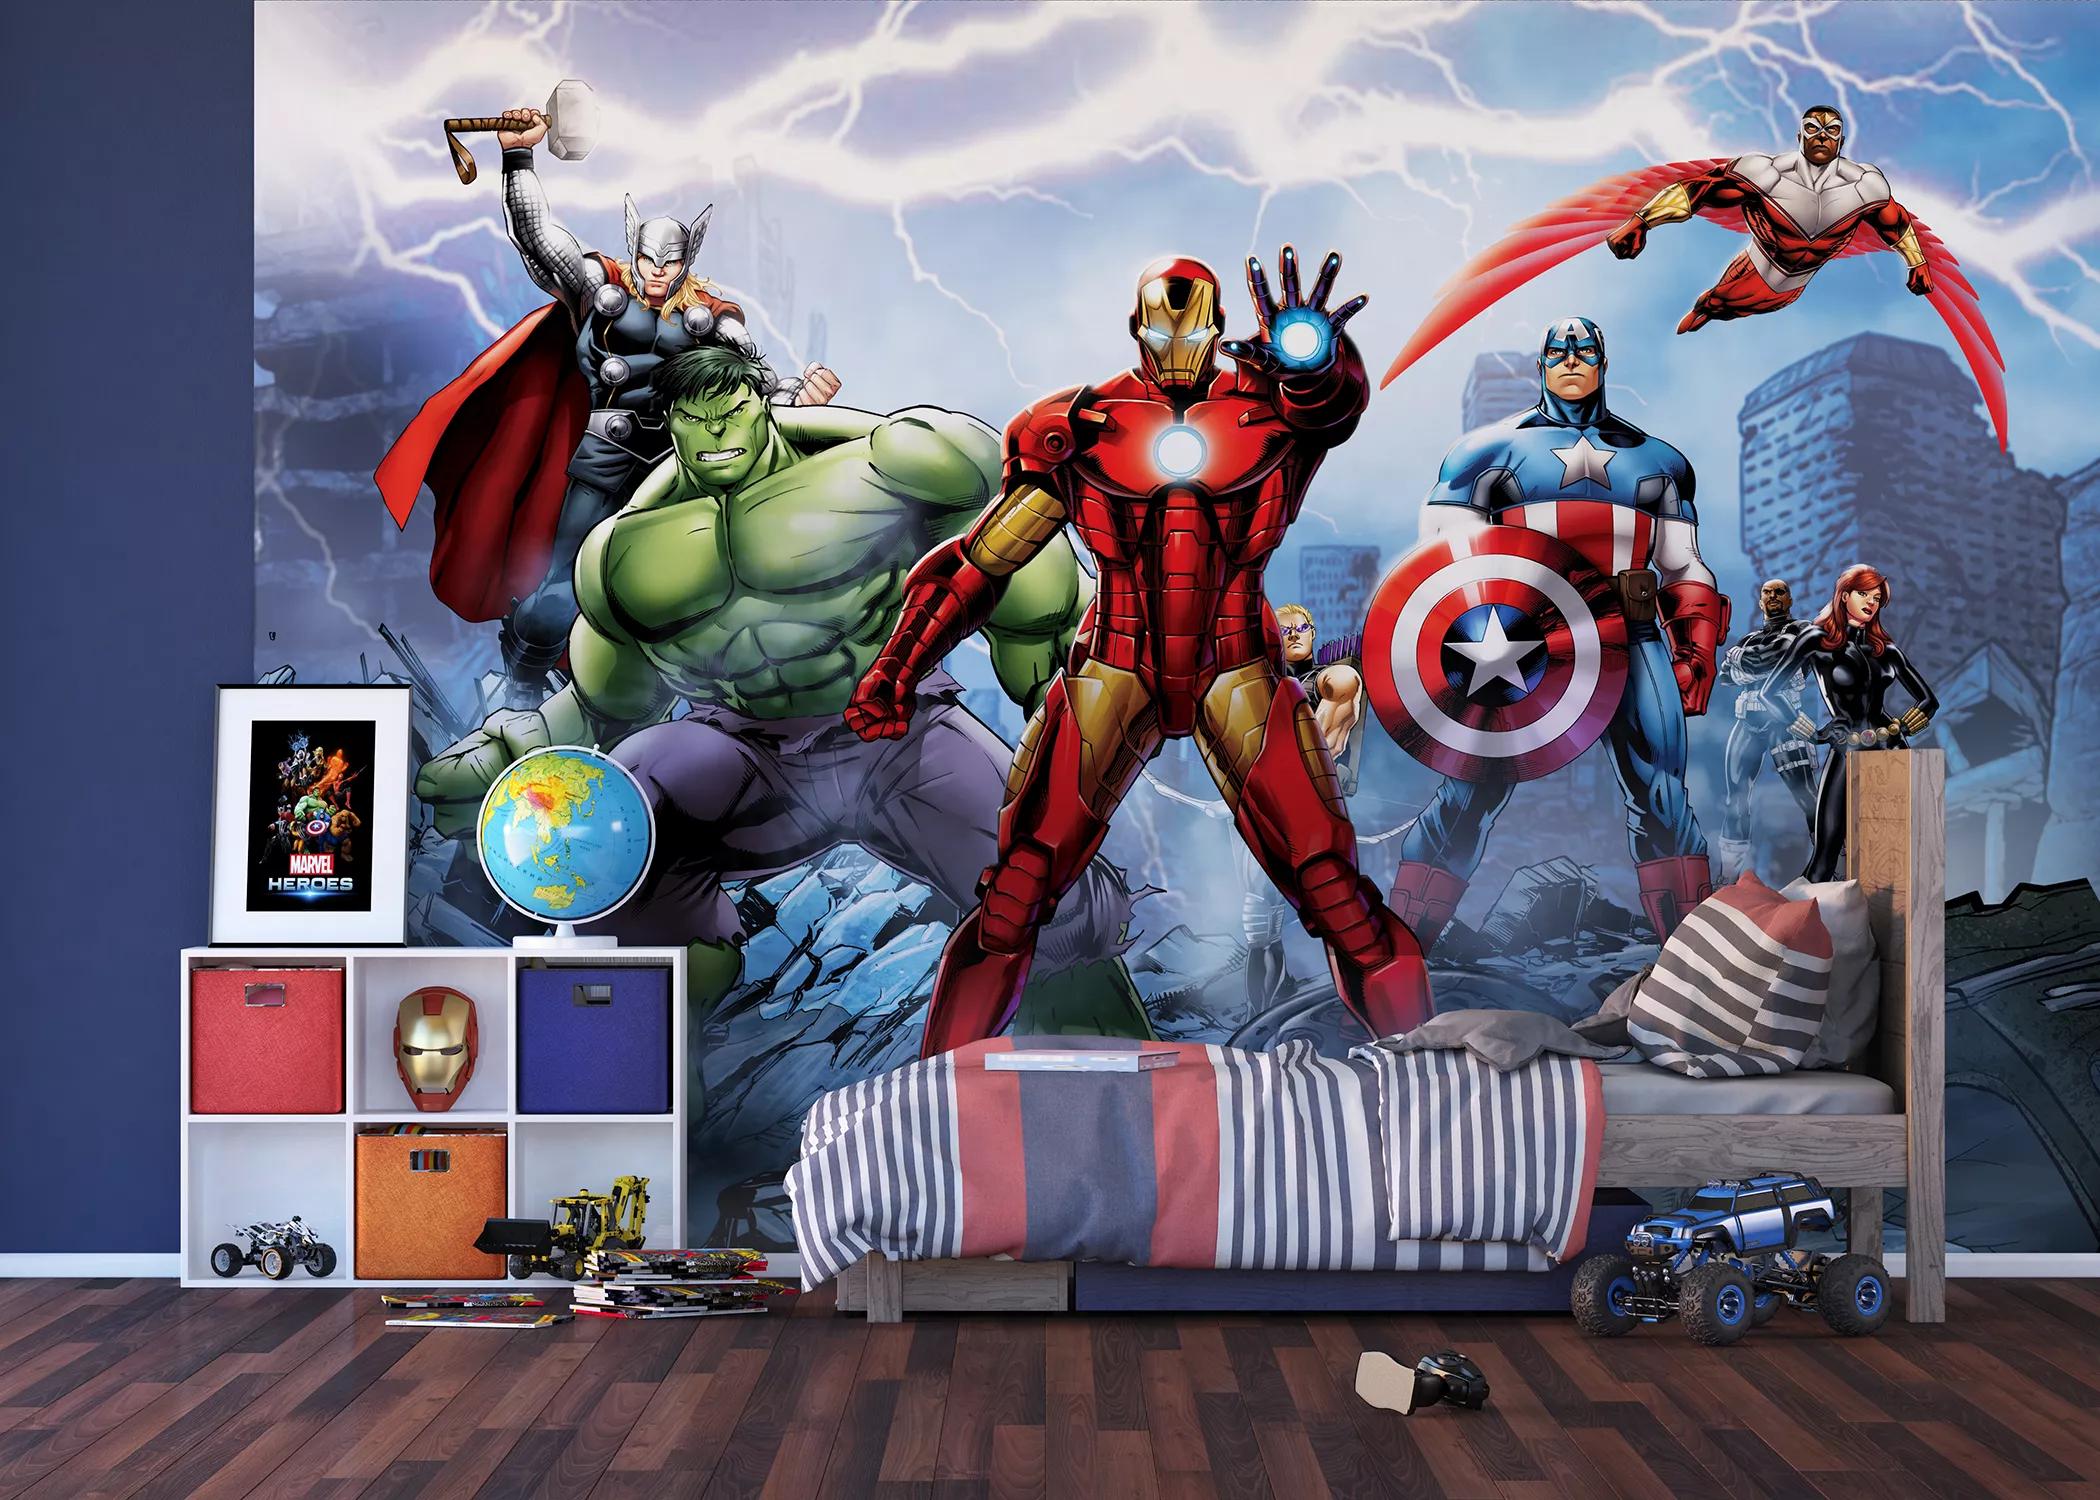 Marvel avenger fali poszter, Hulk, Thor, Vasember és a többi szuperhős egy fali poszteren